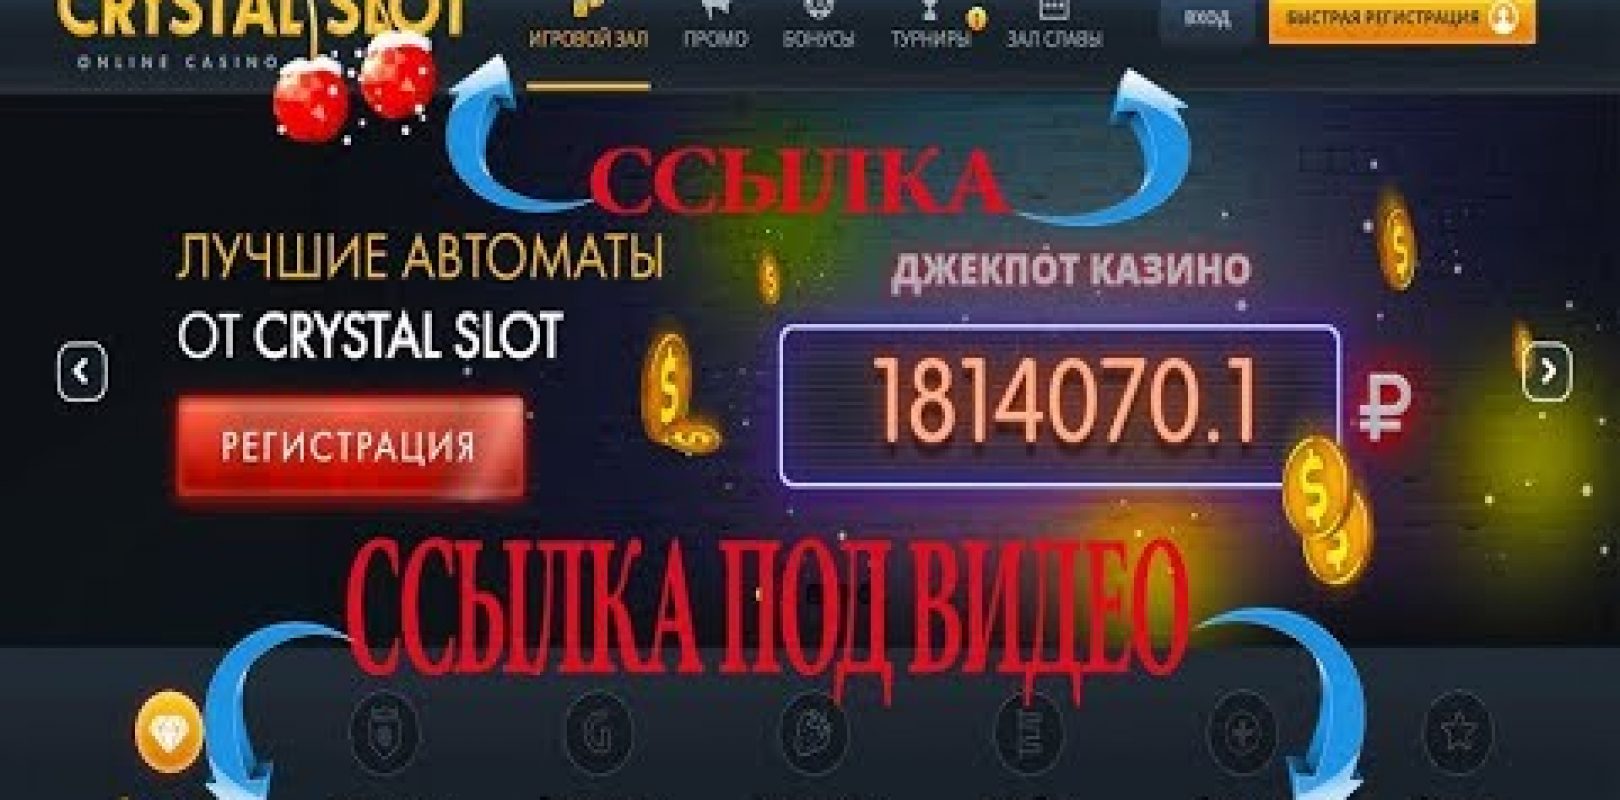 Caesars bitcoin casino - jogos de caça-níqueis online grátis de bitcoin